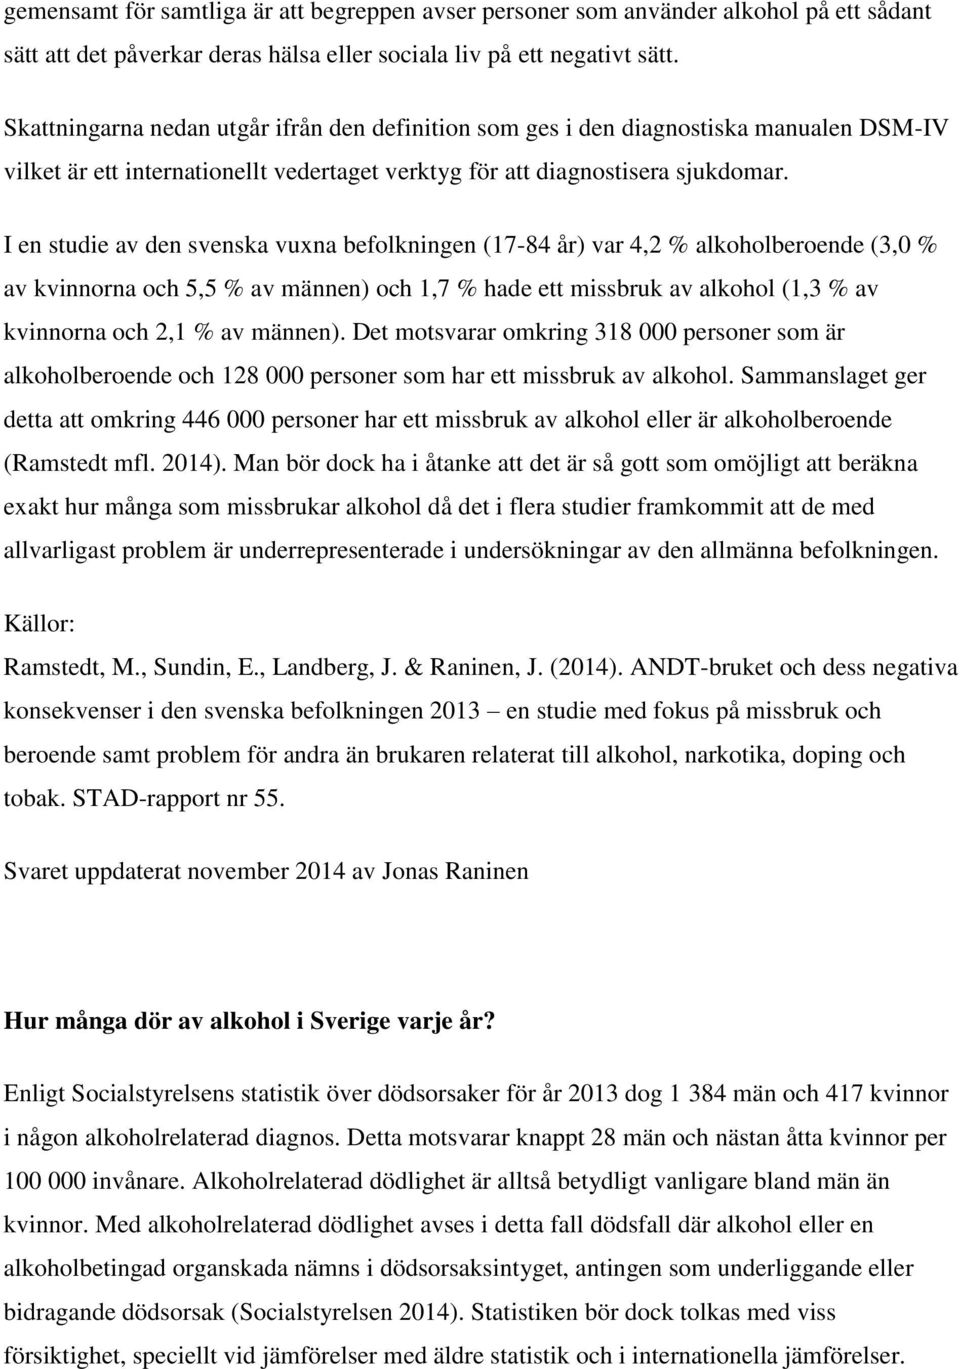 I en studie av den svenska vuxna befolkningen (17-84 år) var 4,2 % alkoholberoende (3,0 % av kvinnorna och 5,5 % av männen) och 1,7 % hade ett missbruk av alkohol (1,3 % av kvinnorna och 2,1 % av